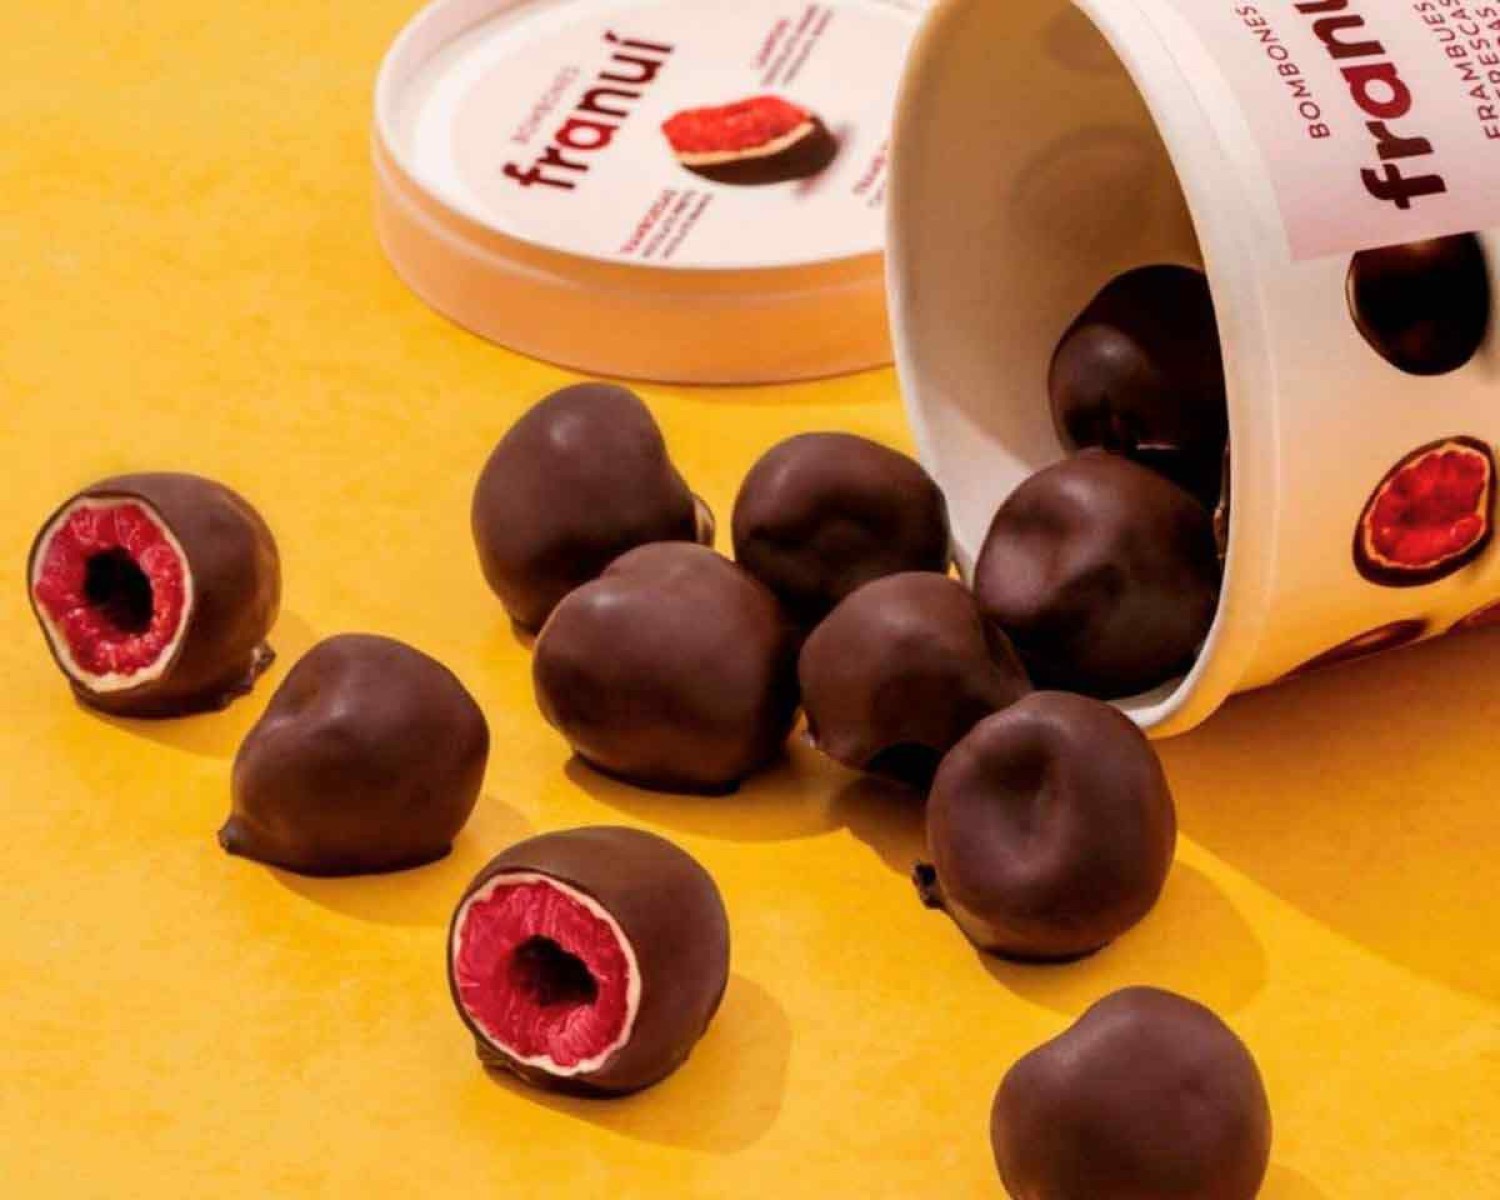 Bombons de chocolate com framboesa da fábrica Rapa Nui são sensação em Bariloche